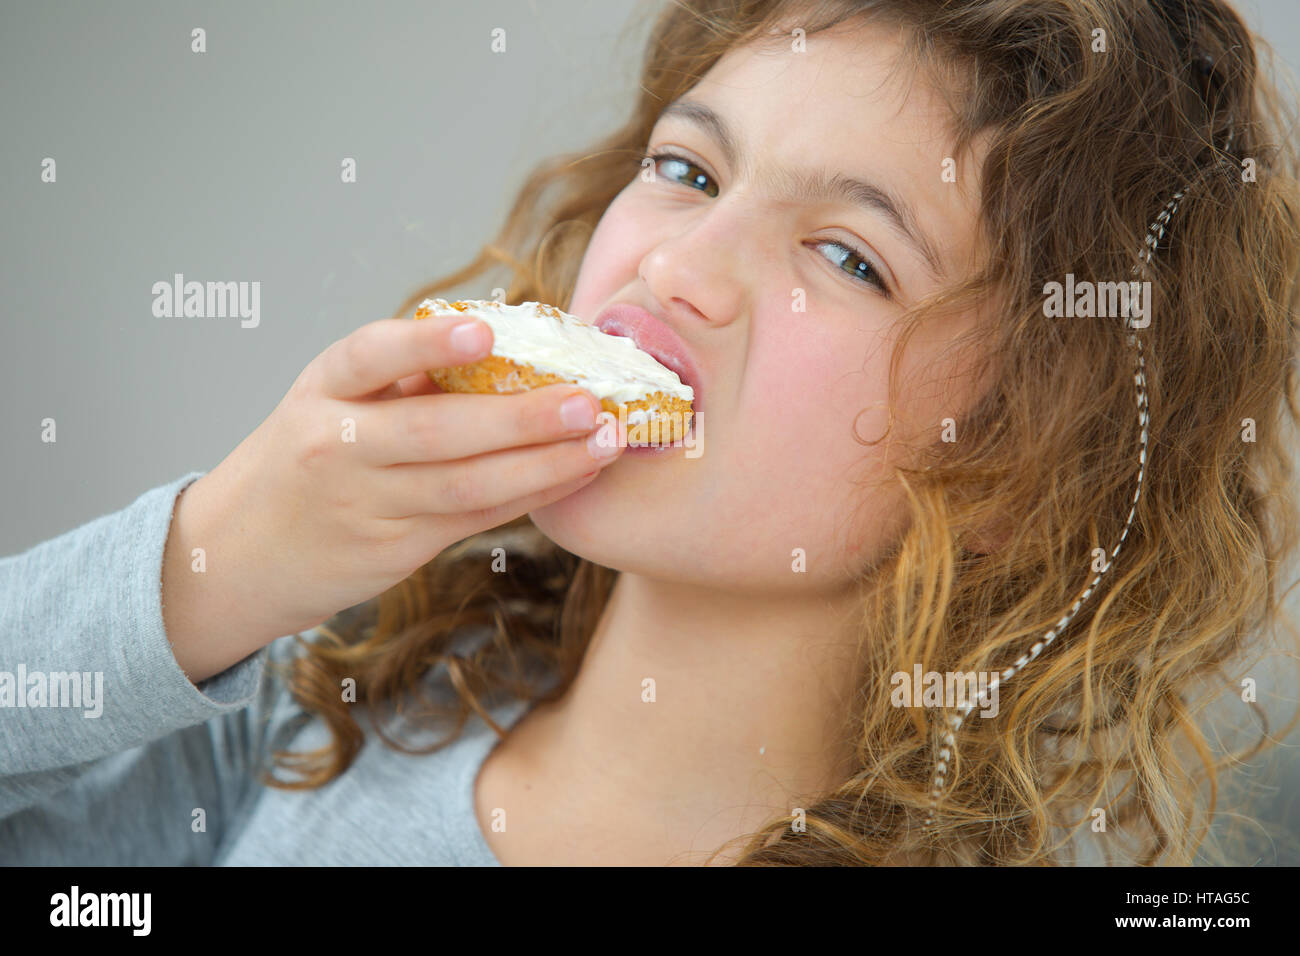 Little girl eating bread Stock Photo